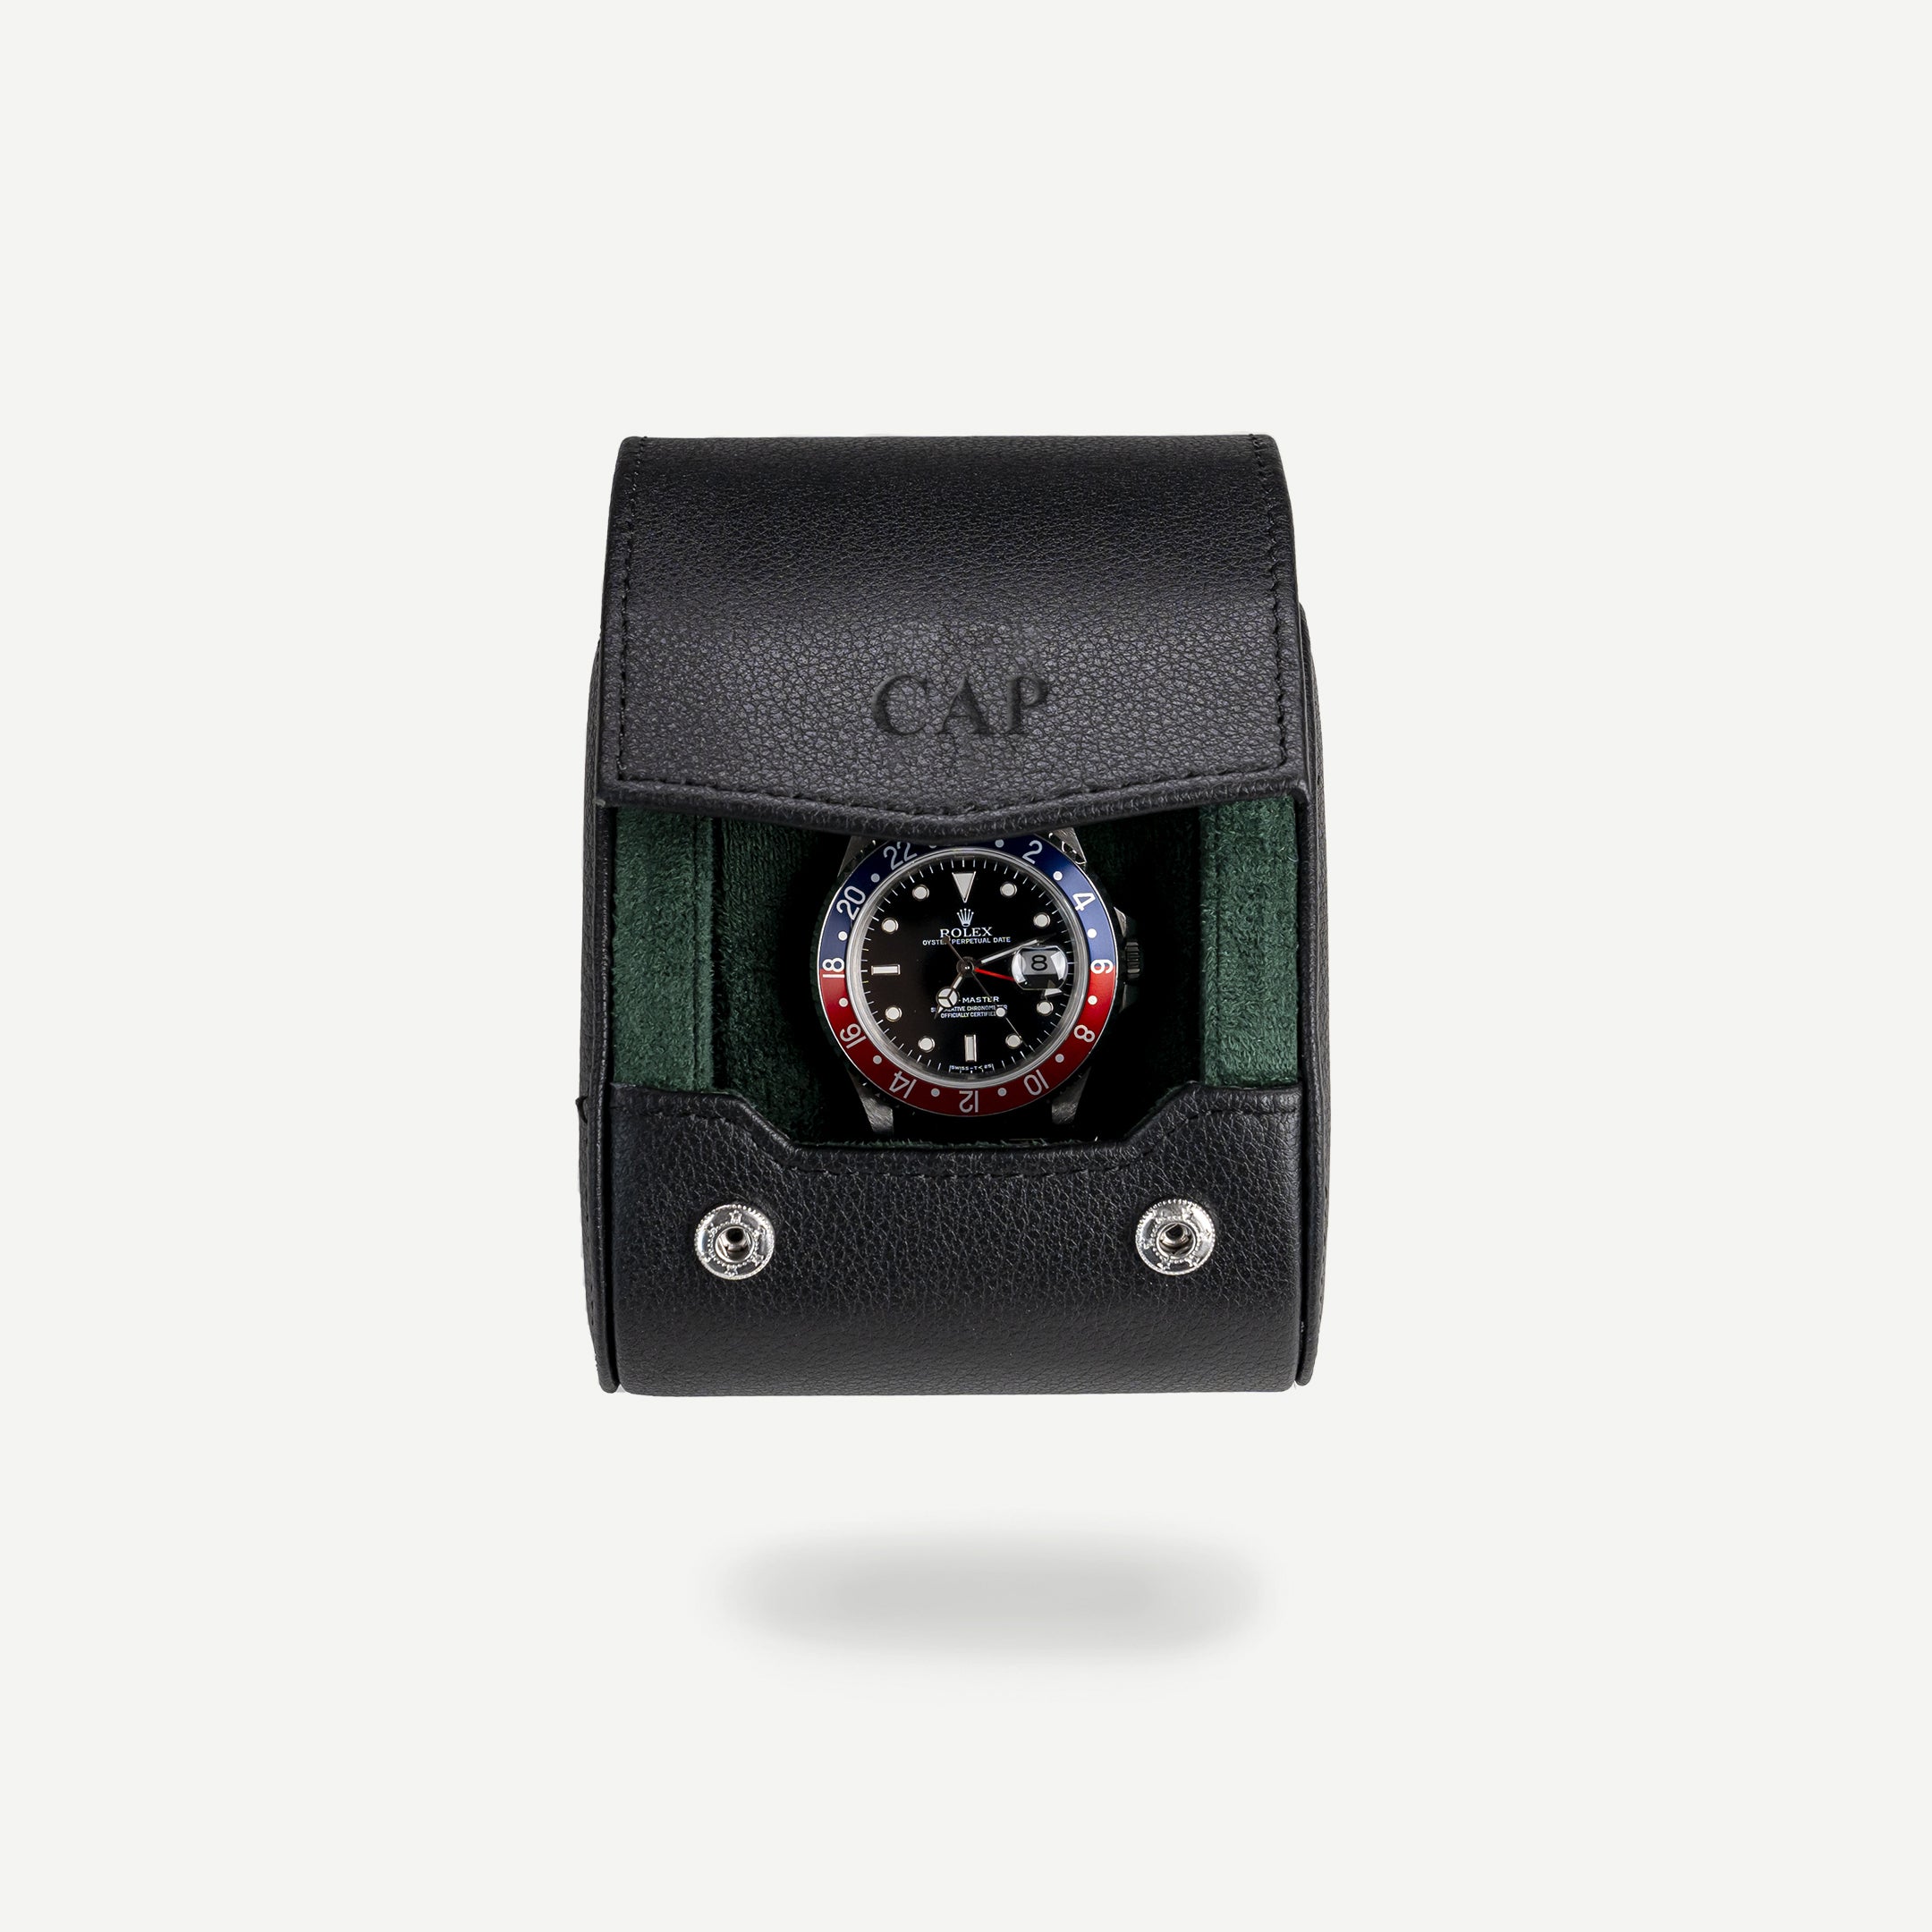 Personalisierbare Uhrenrolle für eine Uhr - Schwarz Grün